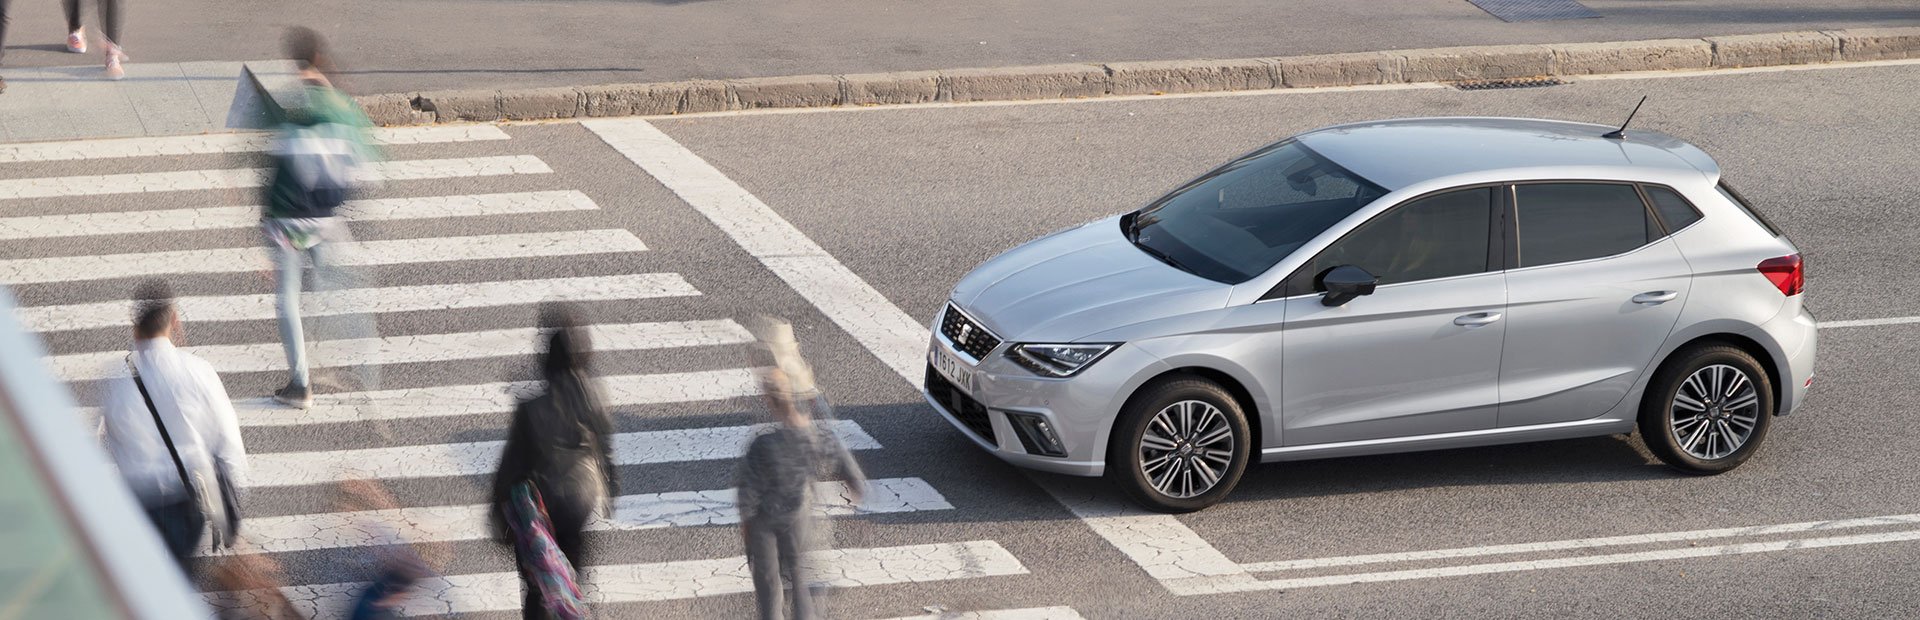 Nowy SEAT Ibiza z maksymalną oceną pięciu gwiazdek w teście Euro NCAP